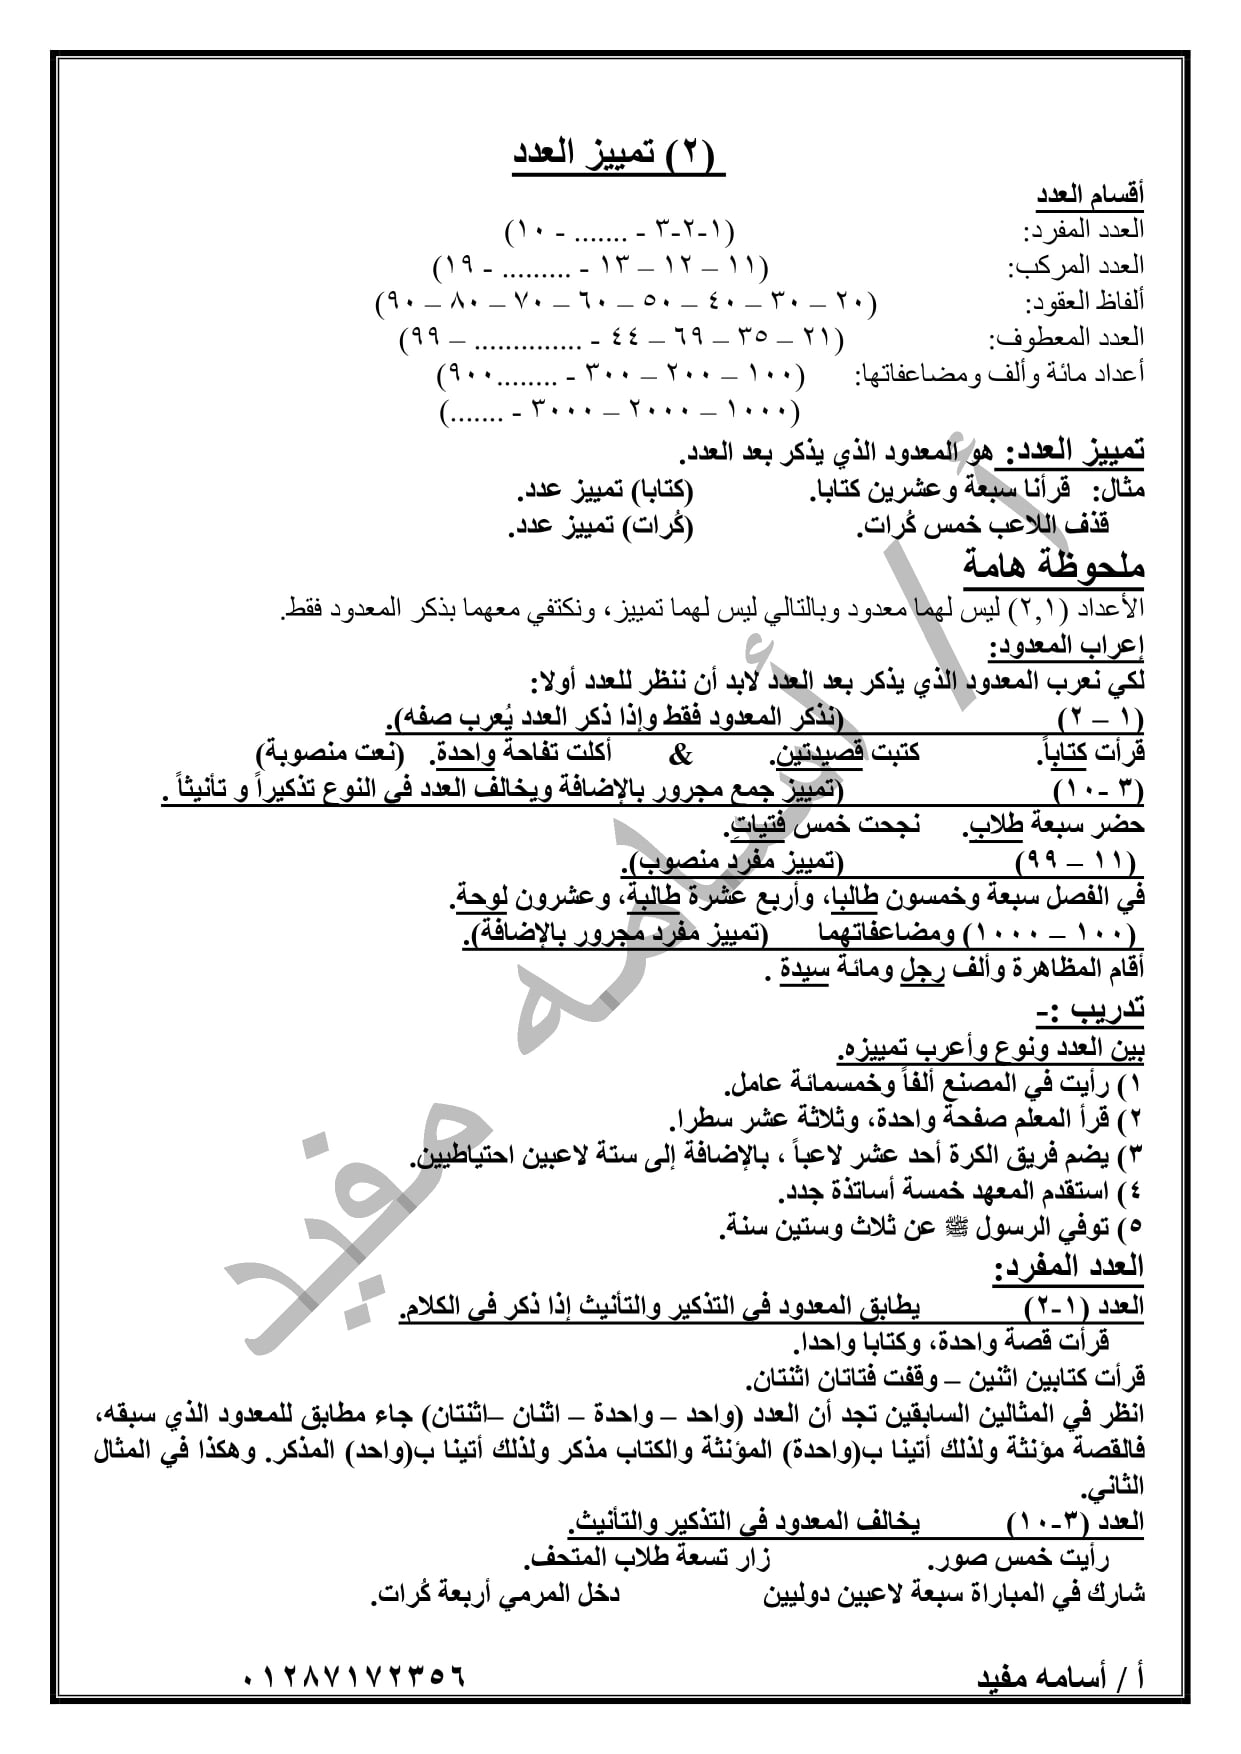 ملخص منهج شهر ابريل لغة عربية ( قراءة + نصوص + قصة + نحو ) للصف الثانى الاعدادى ترم ثاني 14